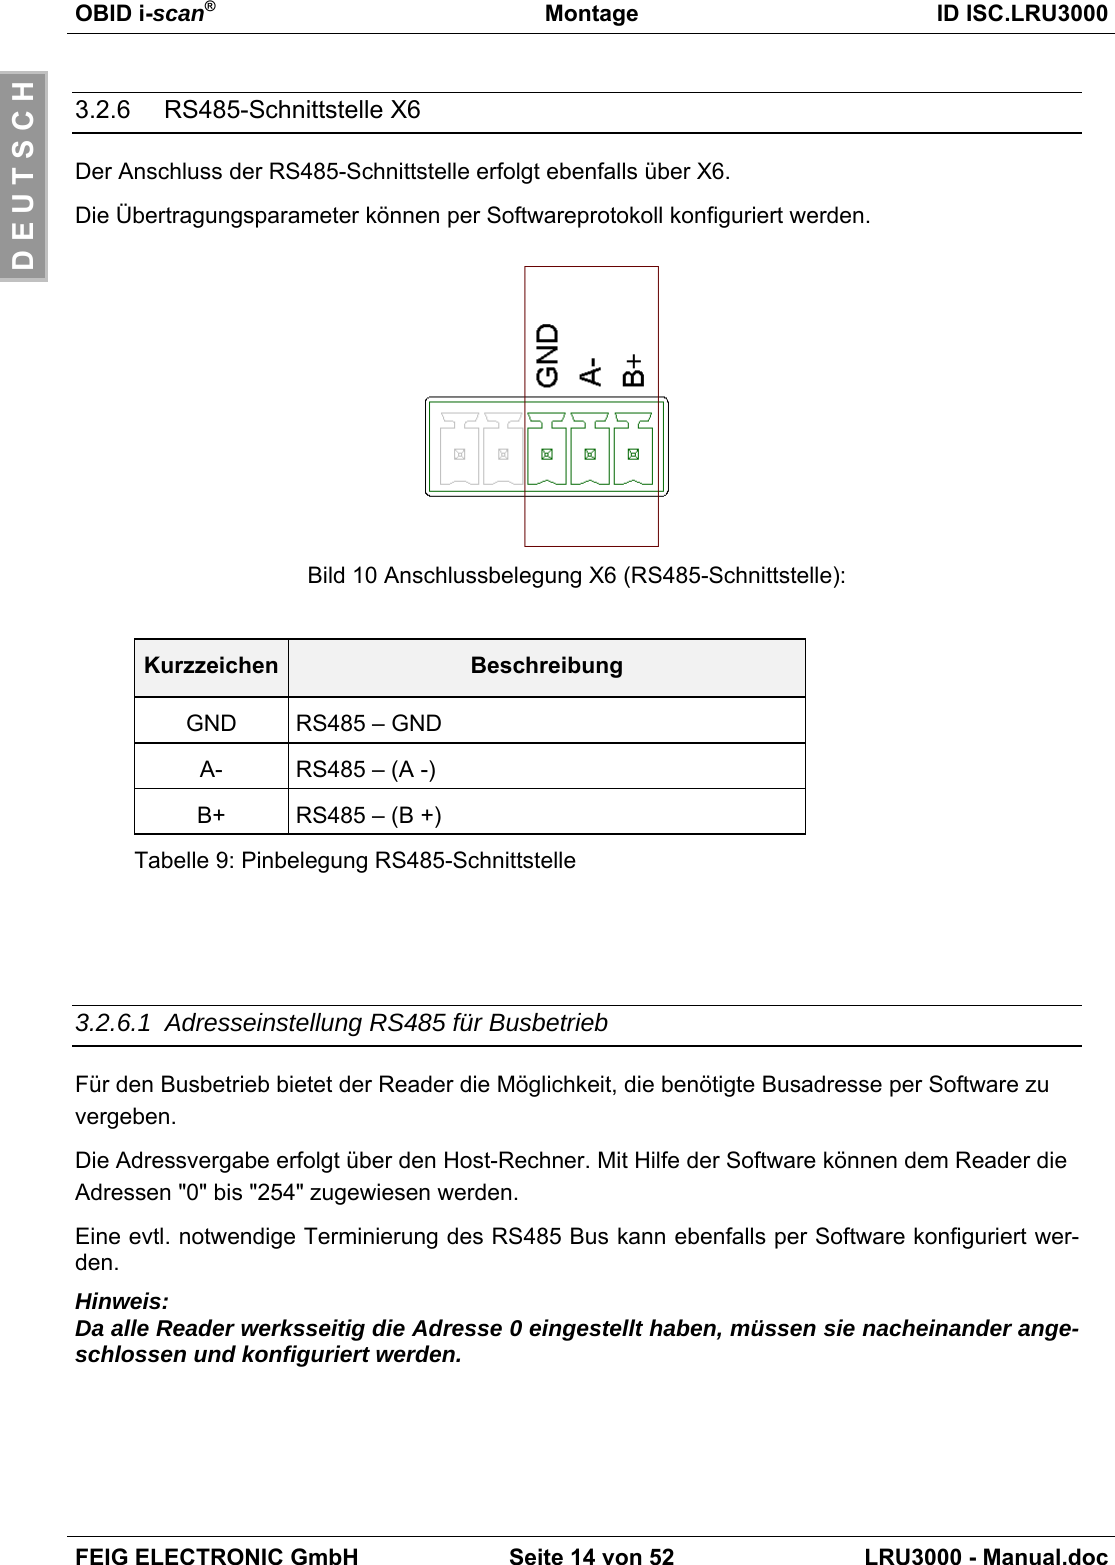 OBID i-scan®Montage ID ISC.LRU3000FEIG ELECTRONIC GmbH Seite 14 von 52 LRU3000 - Manual.docD E U T S C H3.2.6    RS485-Schnittstelle X6Der Anschluss der RS485-Schnittstelle erfolgt ebenfalls über X6.Die Übertragungsparameter können per Softwareprotokoll konfiguriert werden.Bild 10 Anschlussbelegung X6 (RS485-Schnittstelle):Kurzzeichen BeschreibungGND RS485 – GNDA- RS485 – (A -)B+ RS485 – (B +)Tabelle 9: Pinbelegung RS485-Schnittstelle3.2.6.1  Adresseinstellung RS485 für BusbetriebFür den Busbetrieb bietet der Reader die Möglichkeit, die benötigte Busadresse per Software zuvergeben.Die Adressvergabe erfolgt über den Host-Rechner. Mit Hilfe der Software können dem Reader dieAdressen &quot;0&quot; bis &quot;254&quot; zugewiesen werden.Eine evtl. notwendige Terminierung des RS485 Bus kann ebenfalls per Software konfiguriert wer-den.Hinweis:Da alle Reader werksseitig die Adresse 0 eingestellt haben, müssen sie nacheinander ange-schlossen und konfiguriert werden.